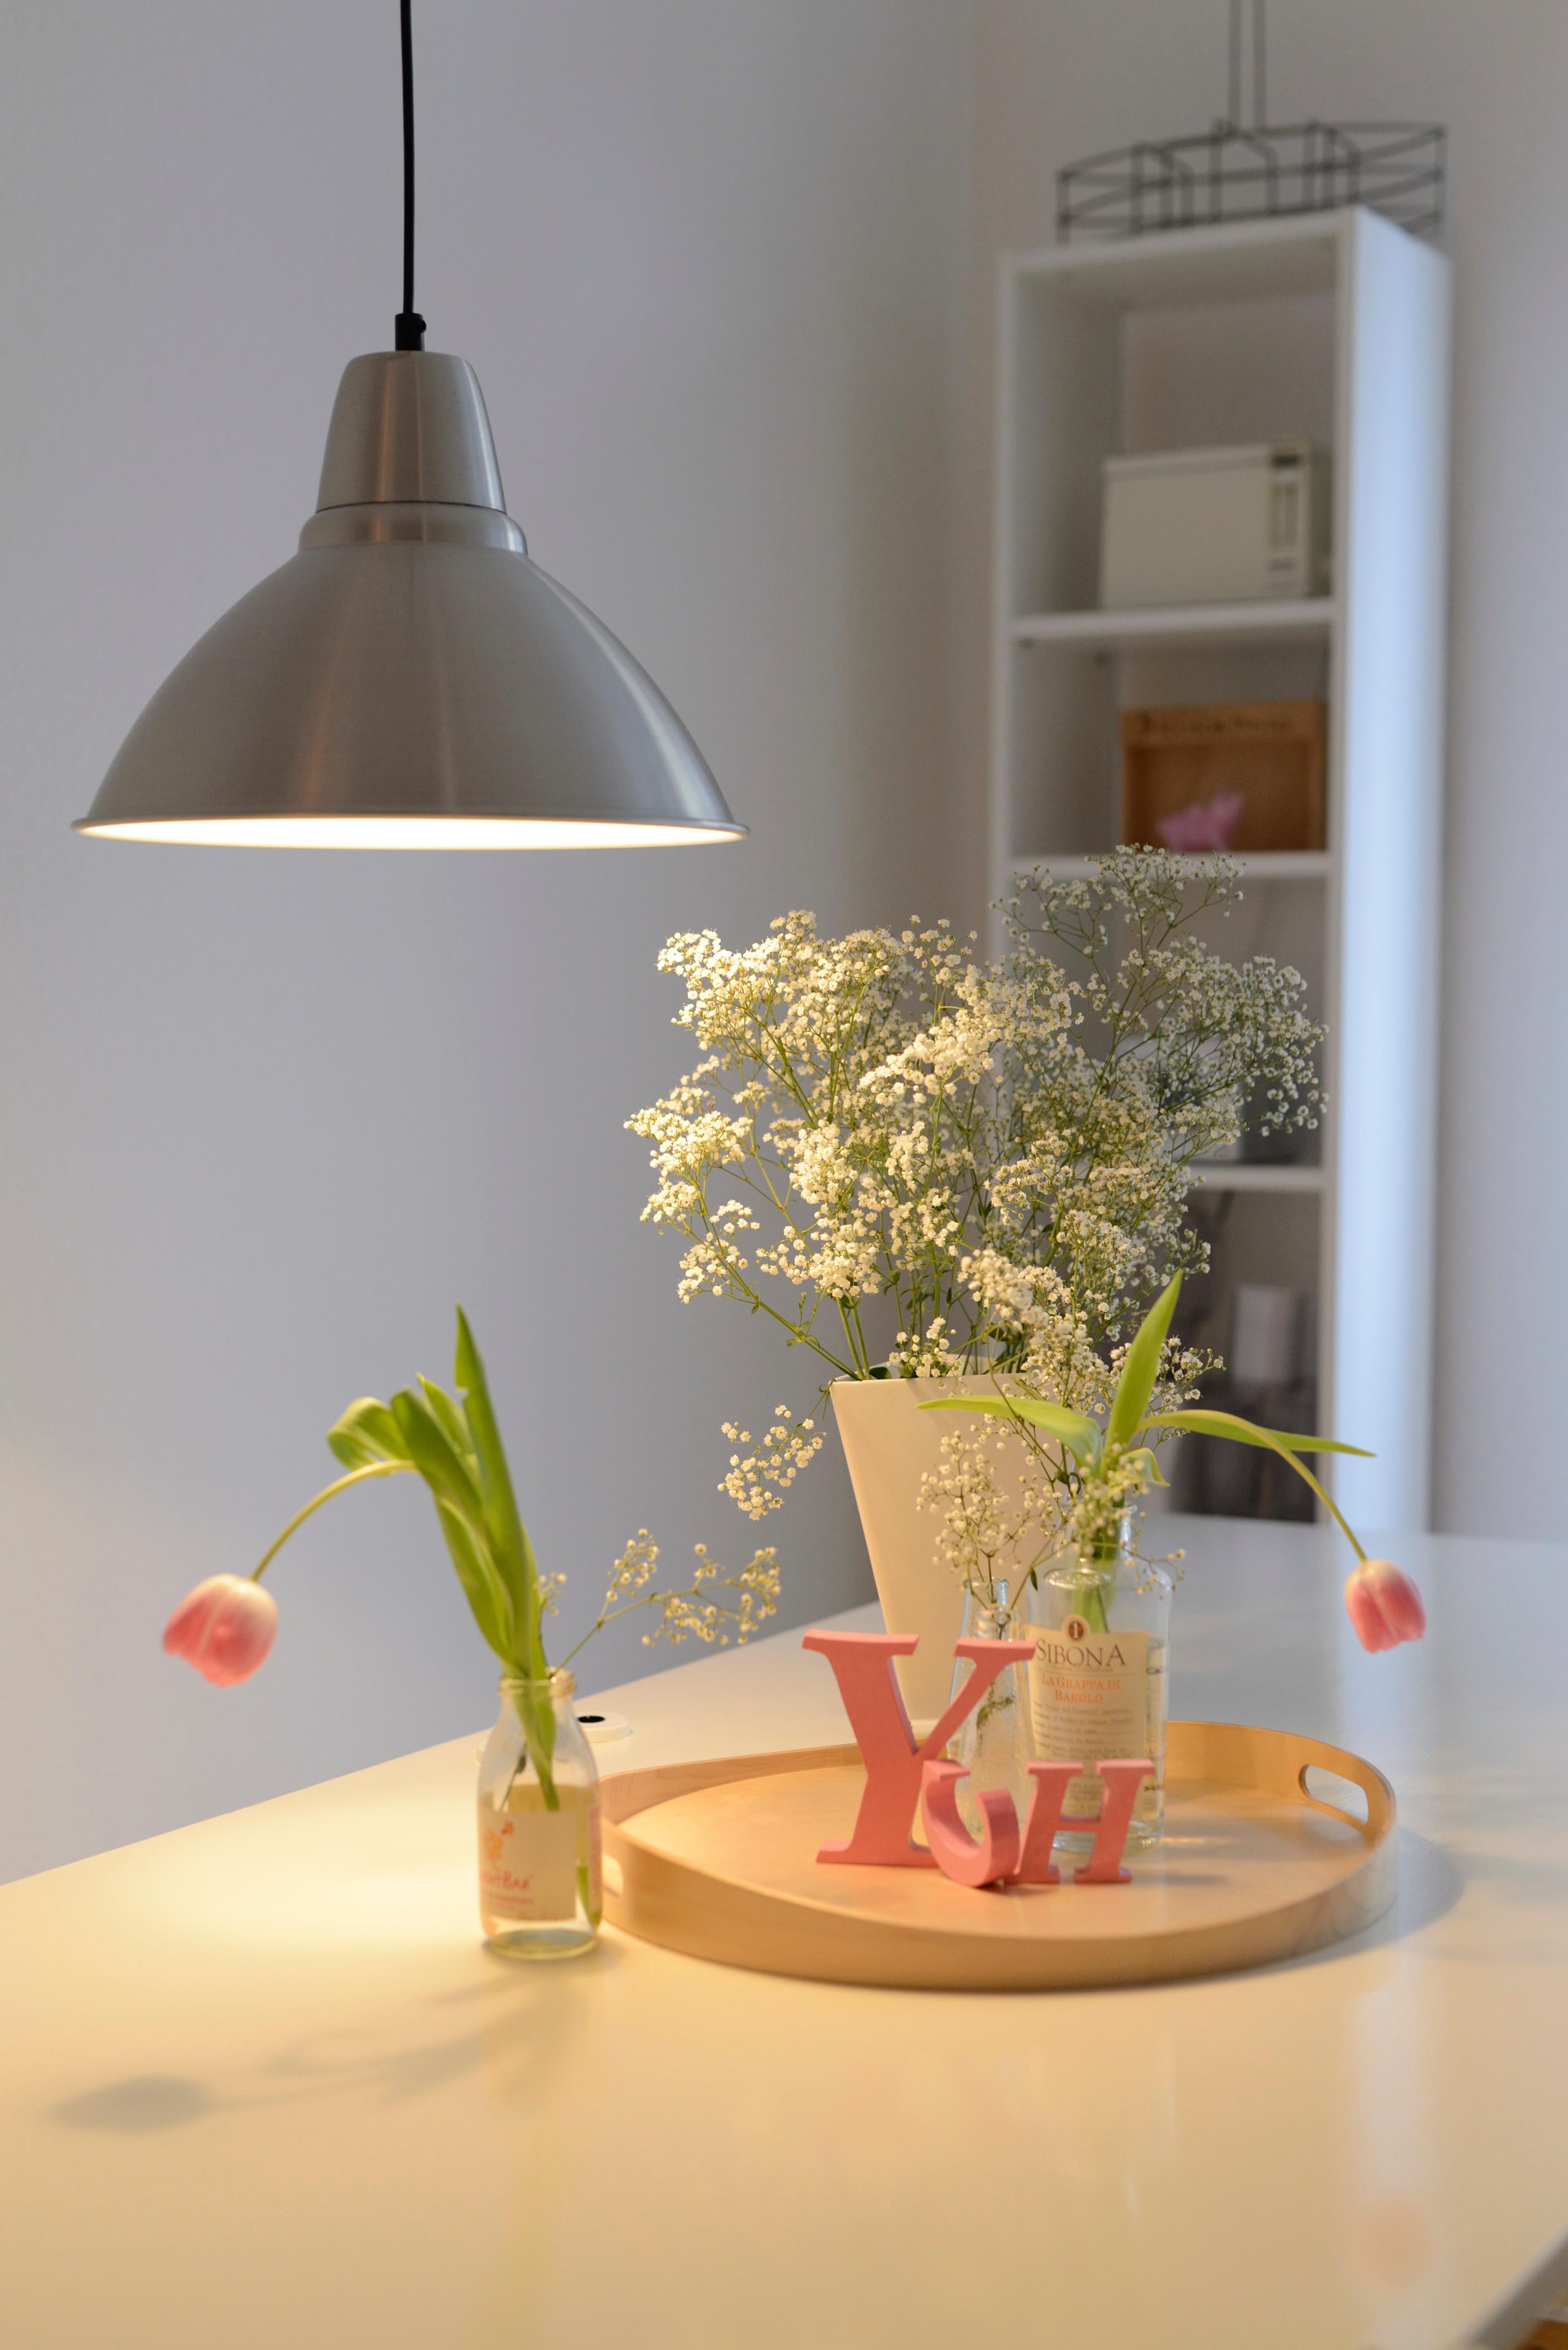 Individuelle Accessoires schmücken den Küchentisch #pendelleuchte ©Yvonne Heinemann Interiors